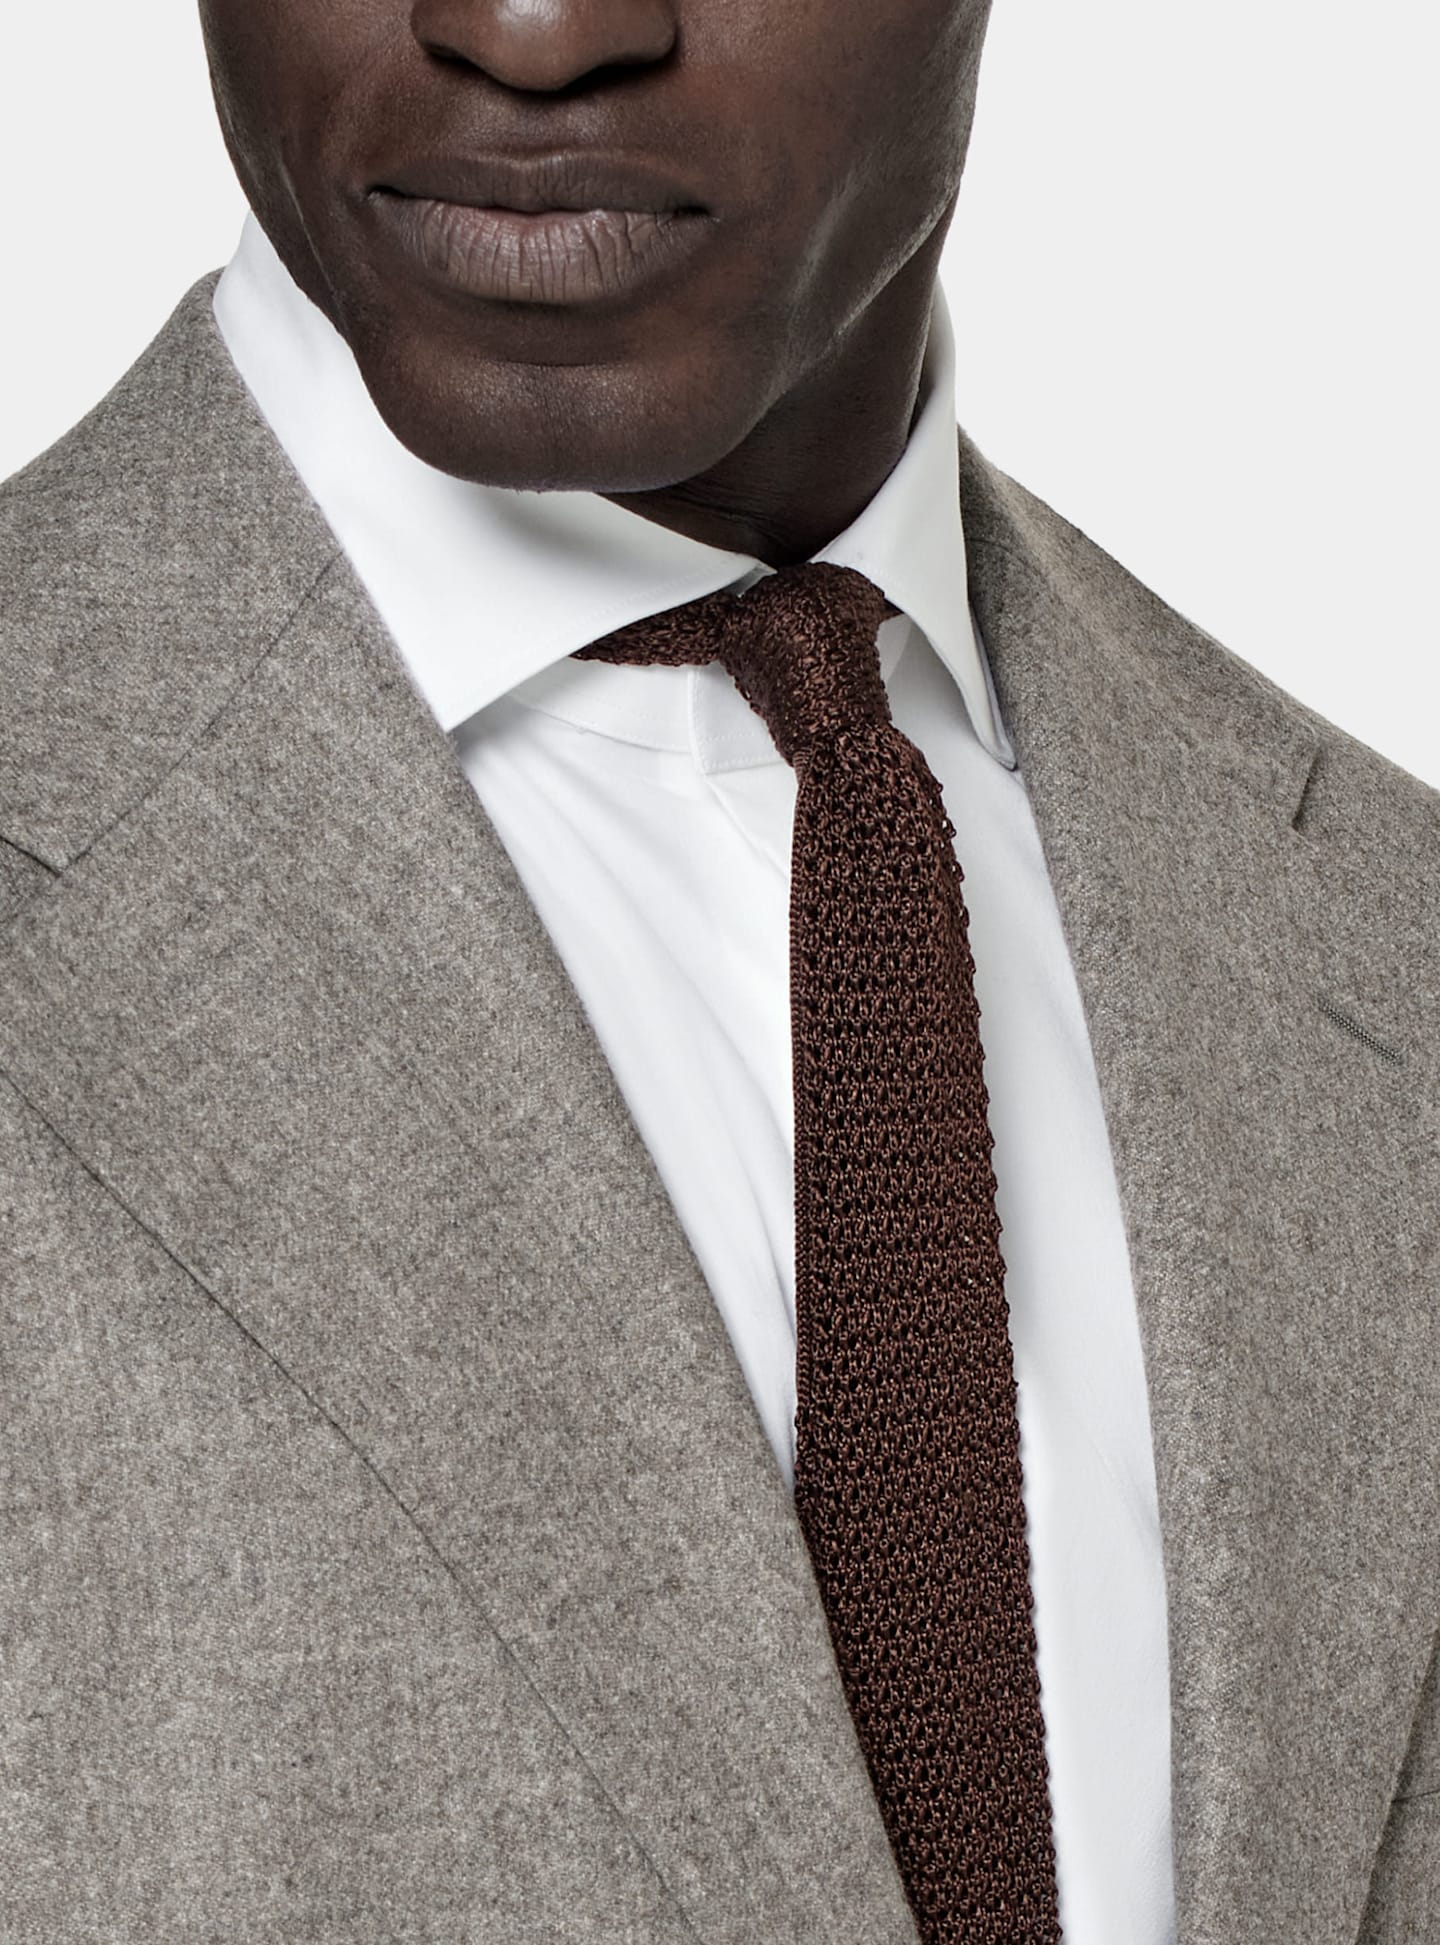 Zbliżenie na szary jednorzędowy garnitur zestawiony z brązowym jedwabnym dzianinowym krawatem.